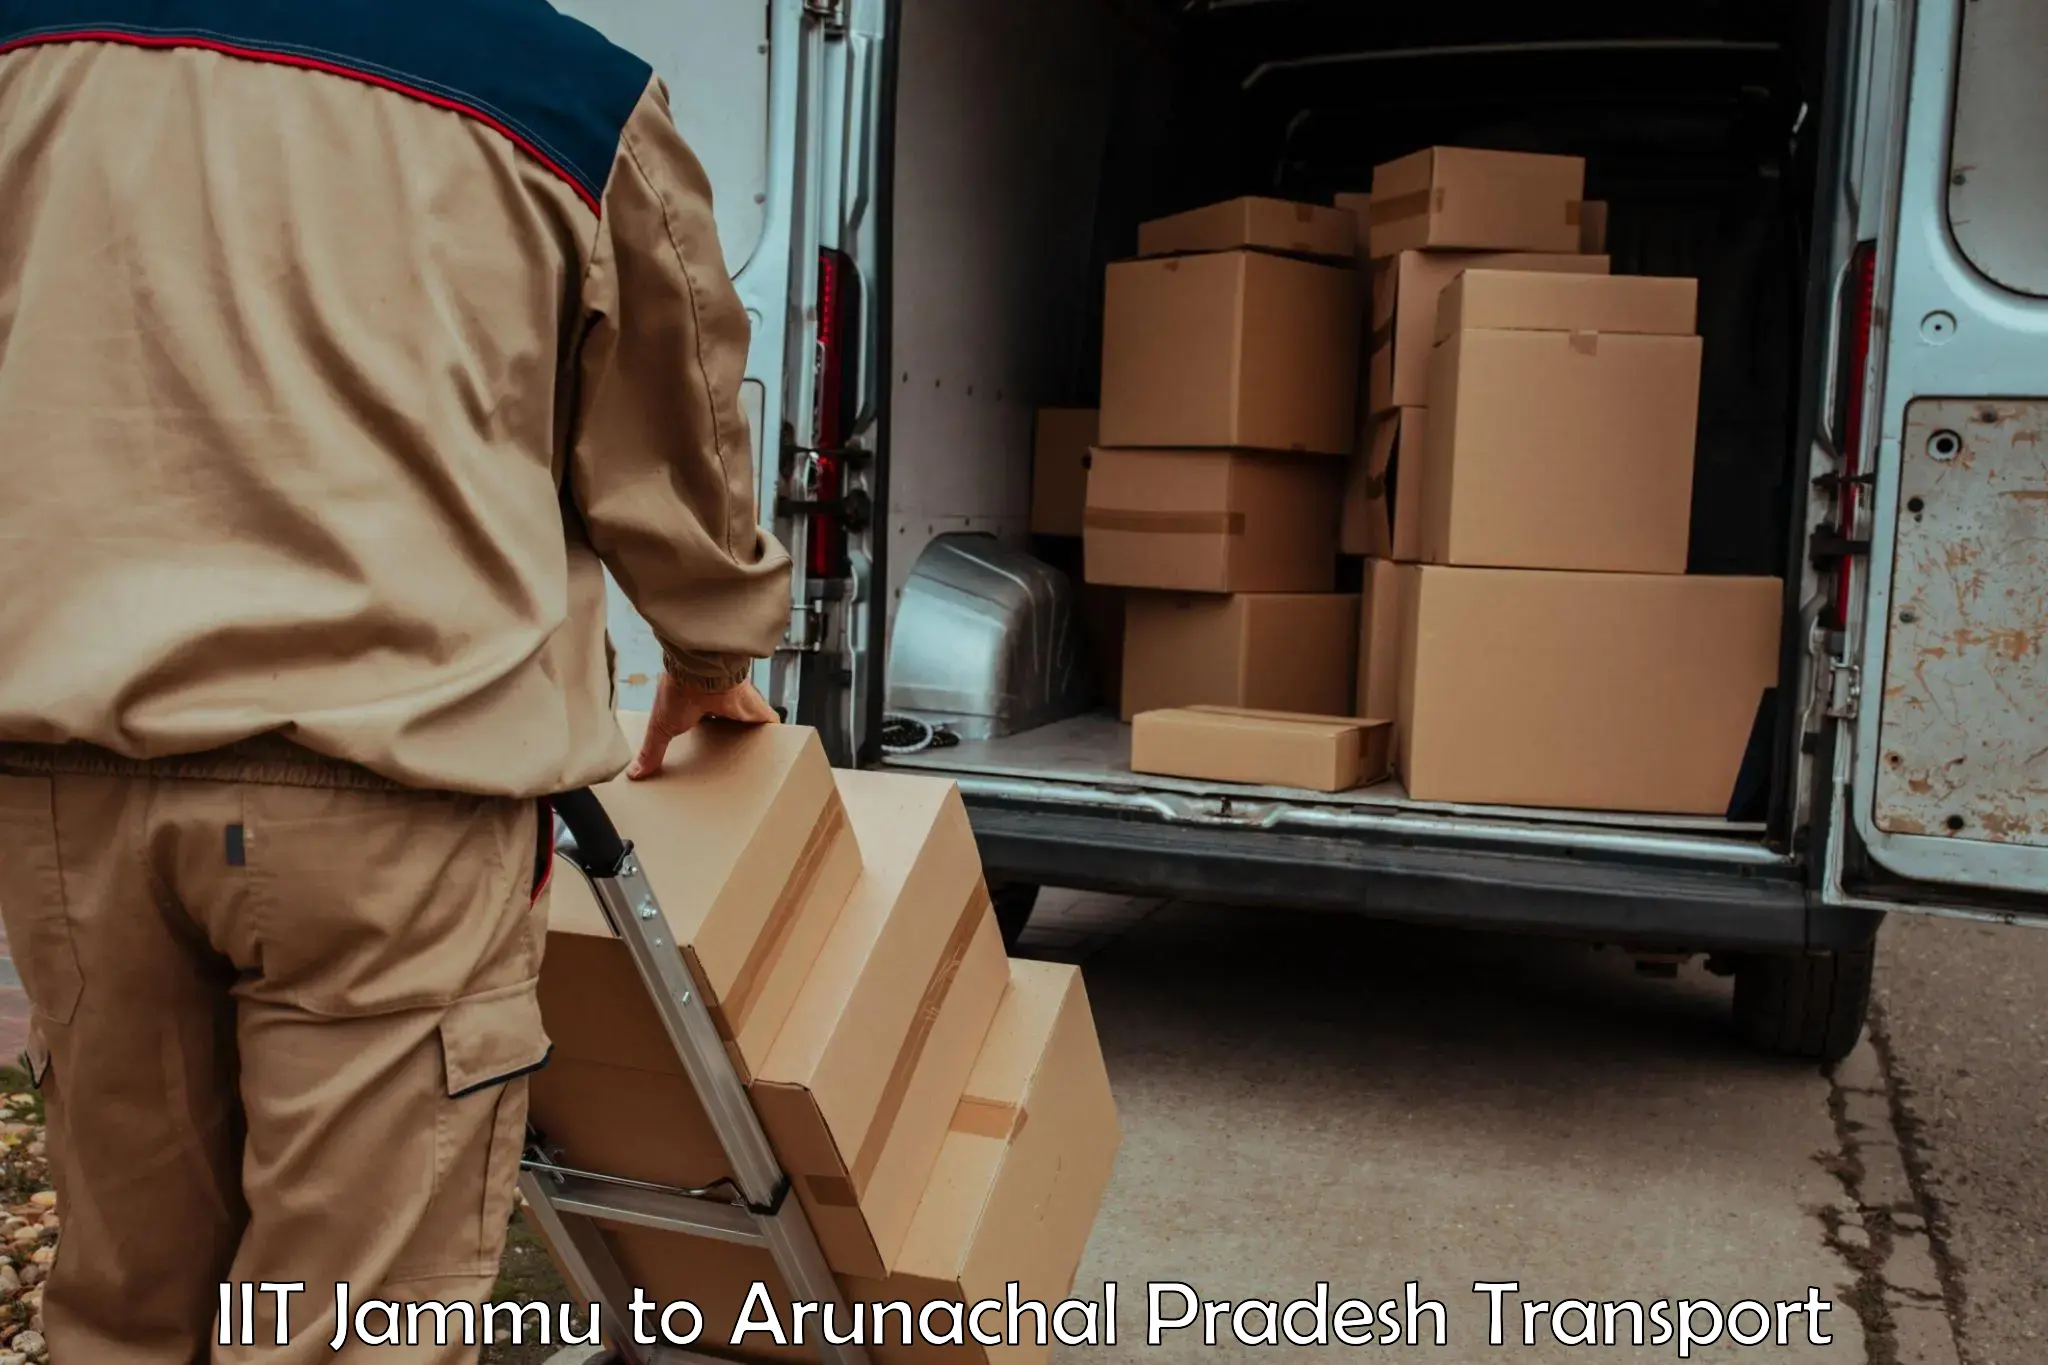 Vehicle transport services IIT Jammu to Arunachal Pradesh